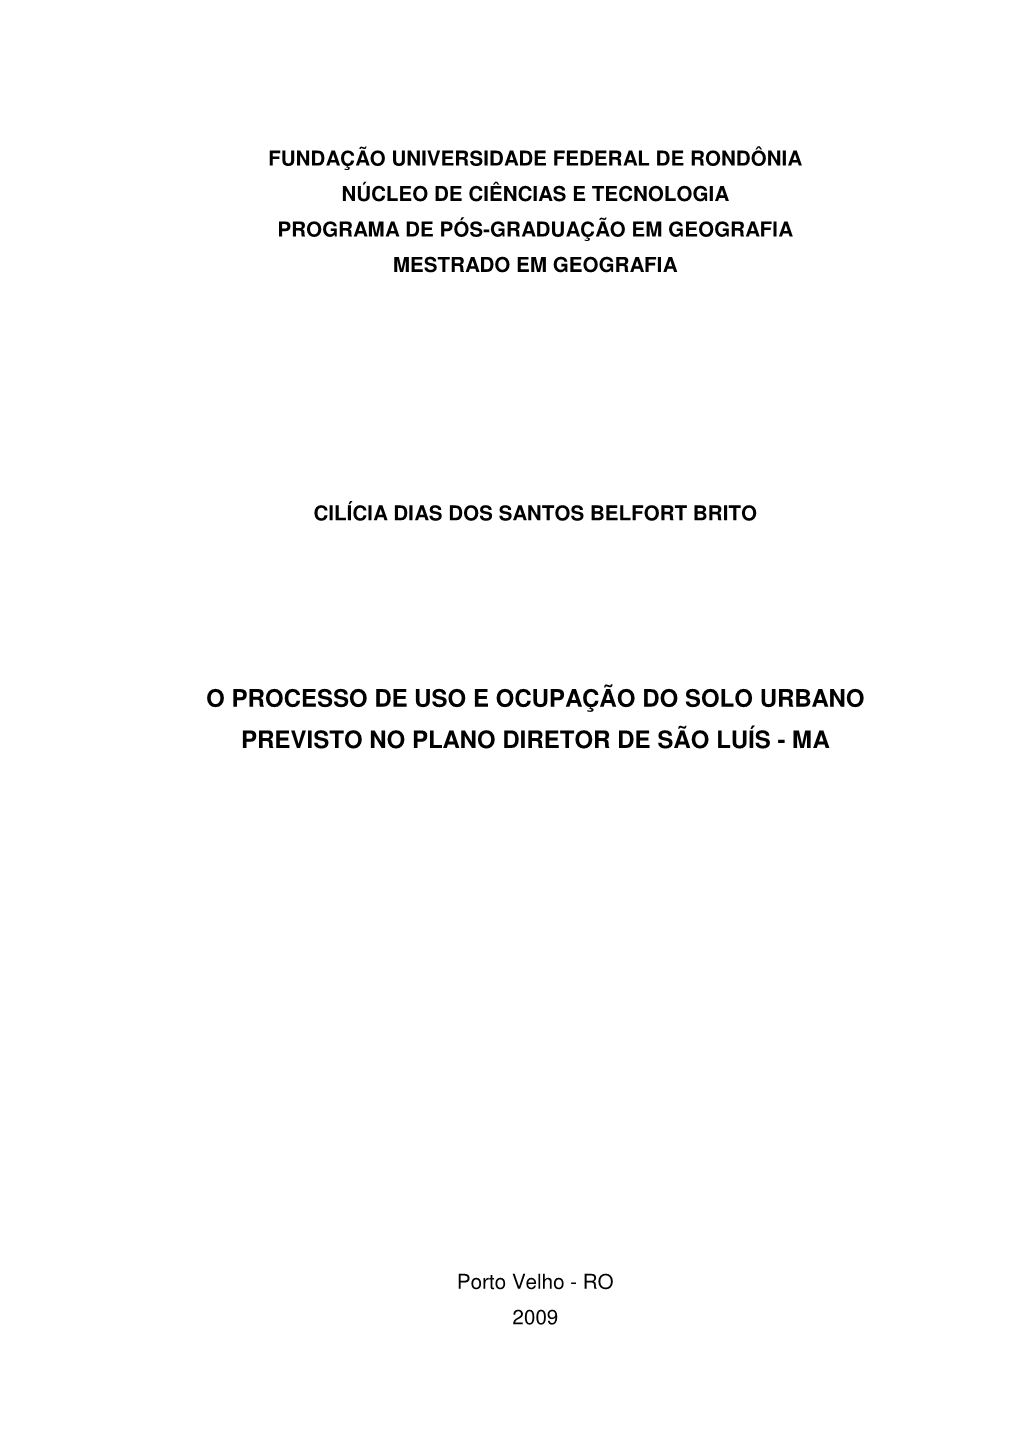 O Processo De Uso E Ocupação Do Solo Urbano Previsto No Plano Diretor De São Luís - Ma